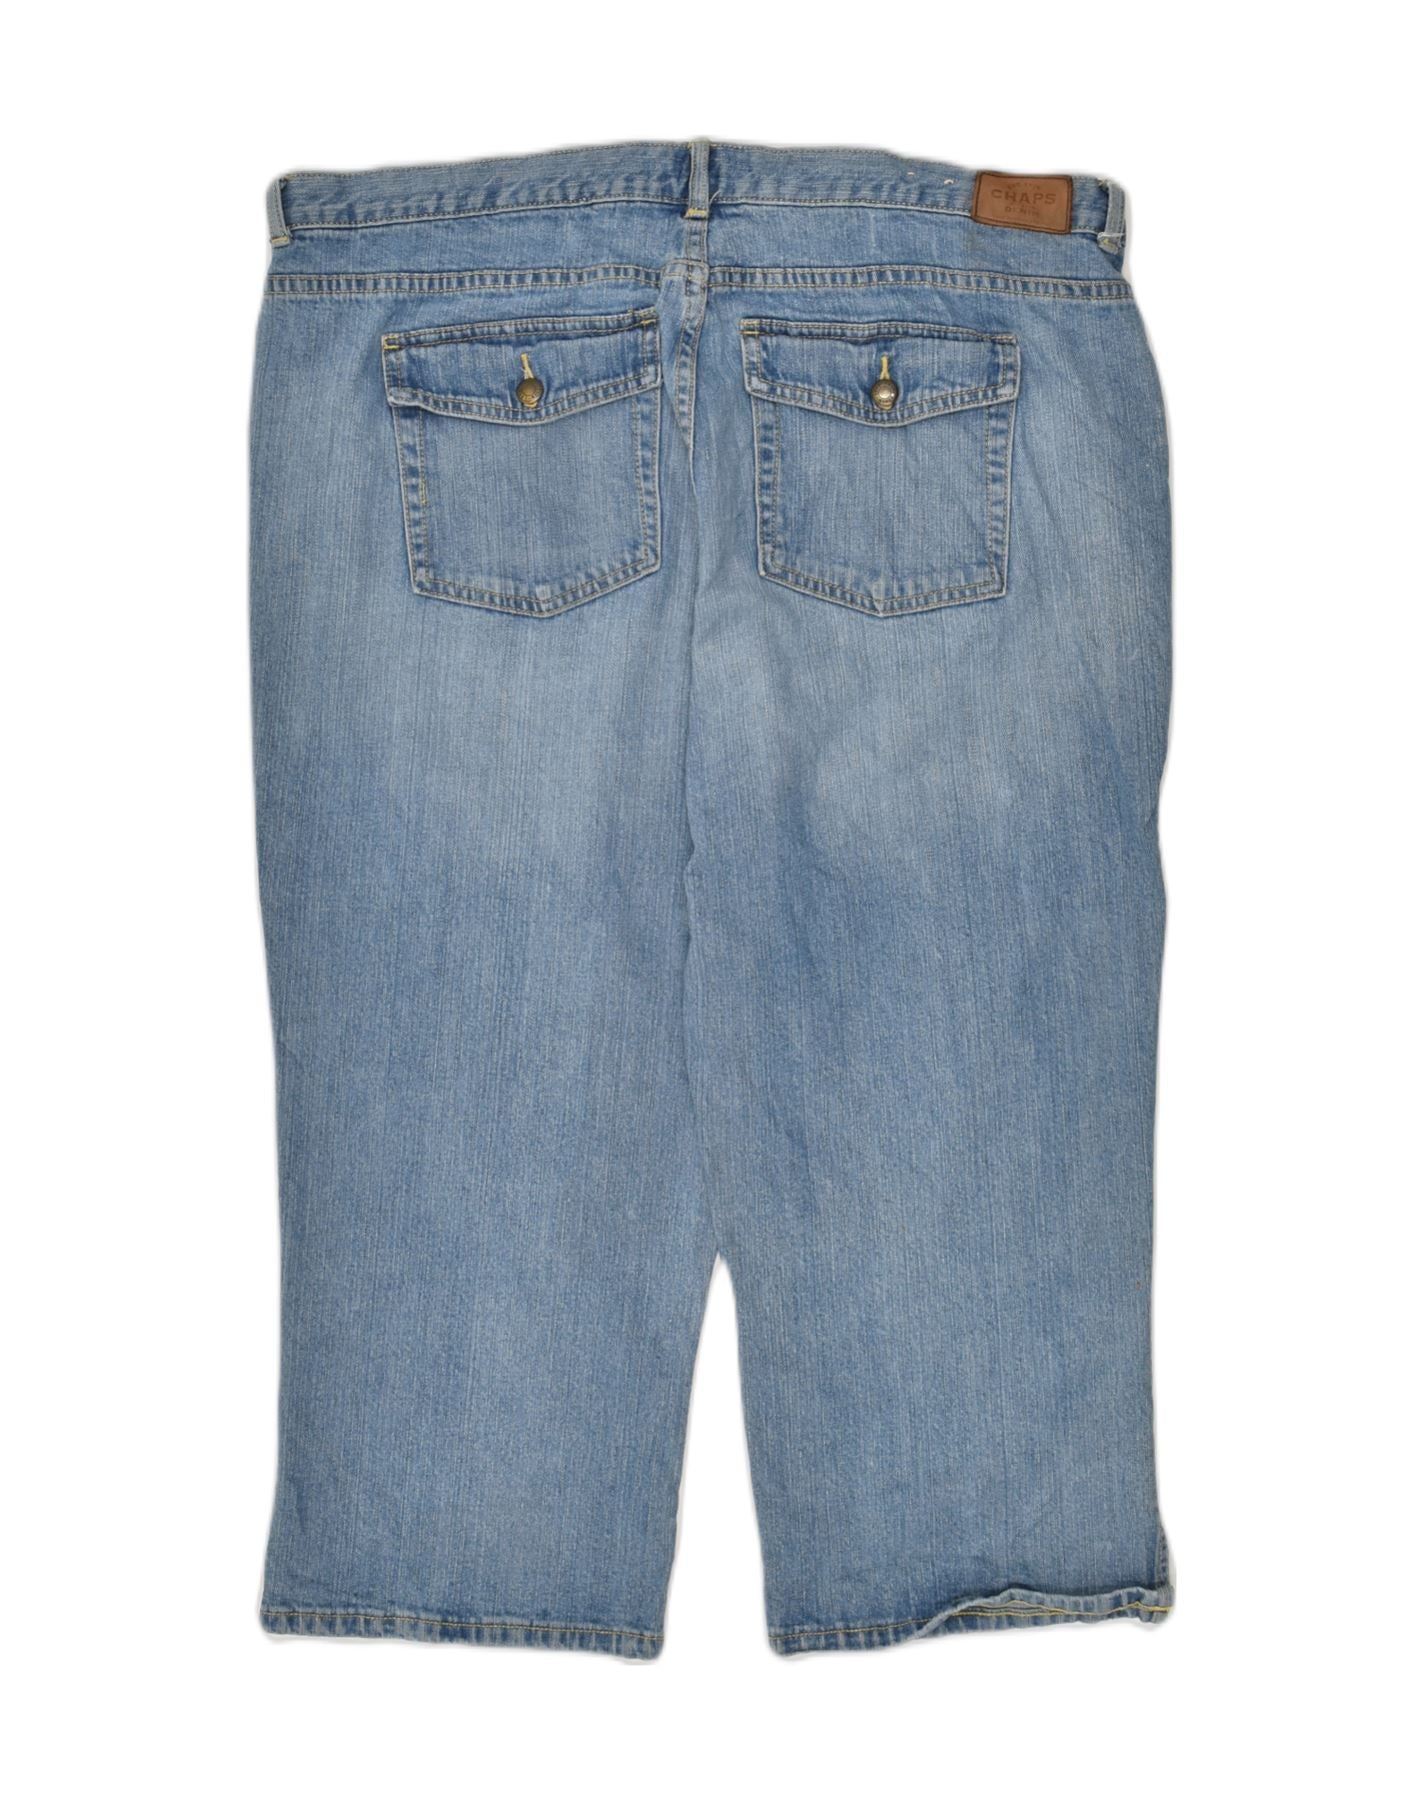 CHAPS Womens Capri Jeans US 16 2XL W38 L20 Blue Cotton